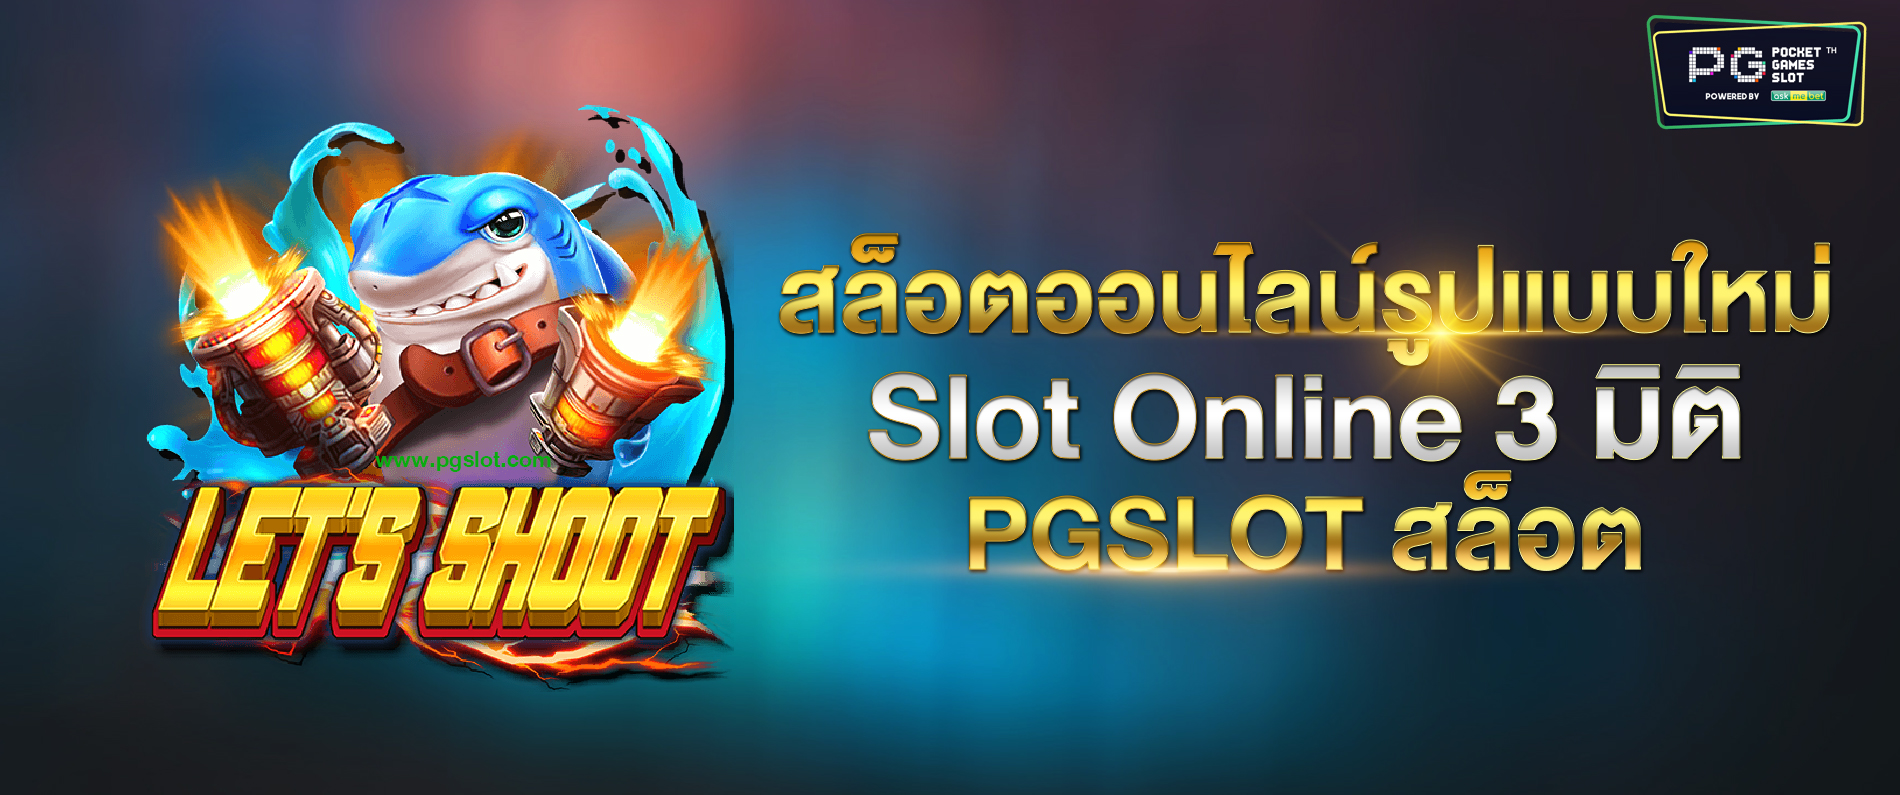 สล็อตออนไลน์รูปแบบใหม่ Slot Online 3 มิติ pgslot สล็อต